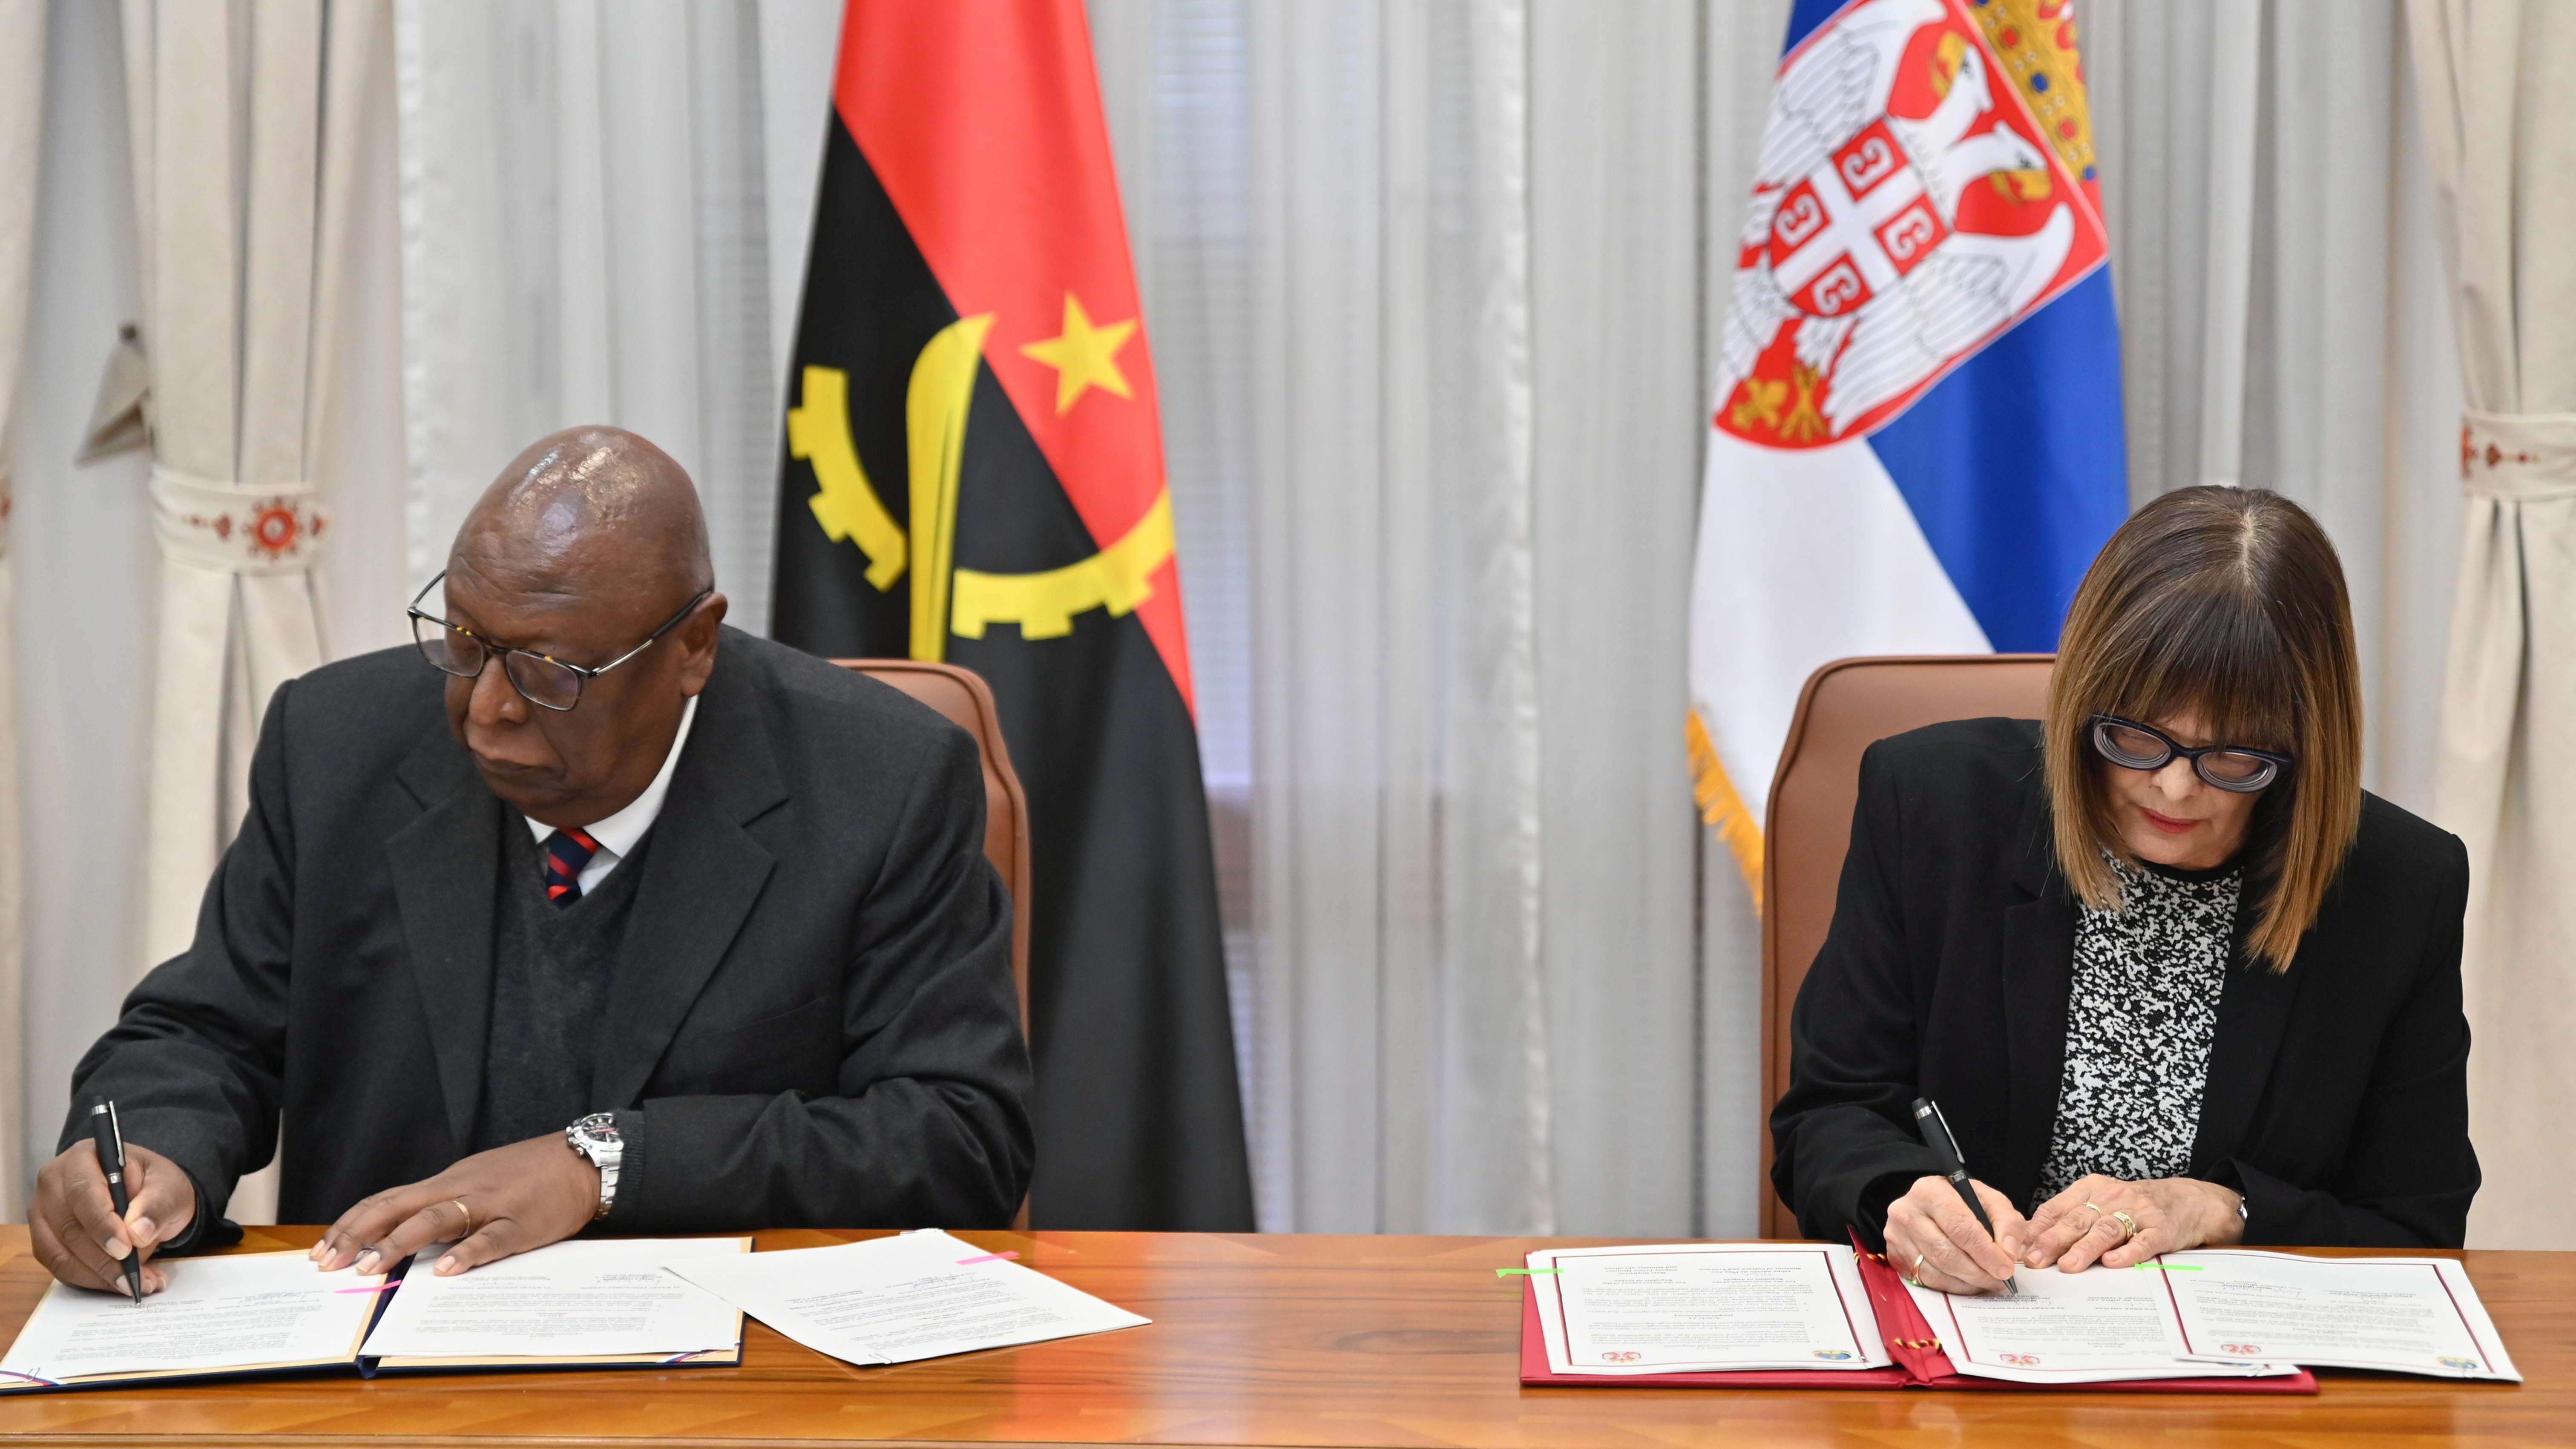 Potpisan Program saradnje između Vlade Republike Srbije i Vlade Republike Angole u oblasti kulture